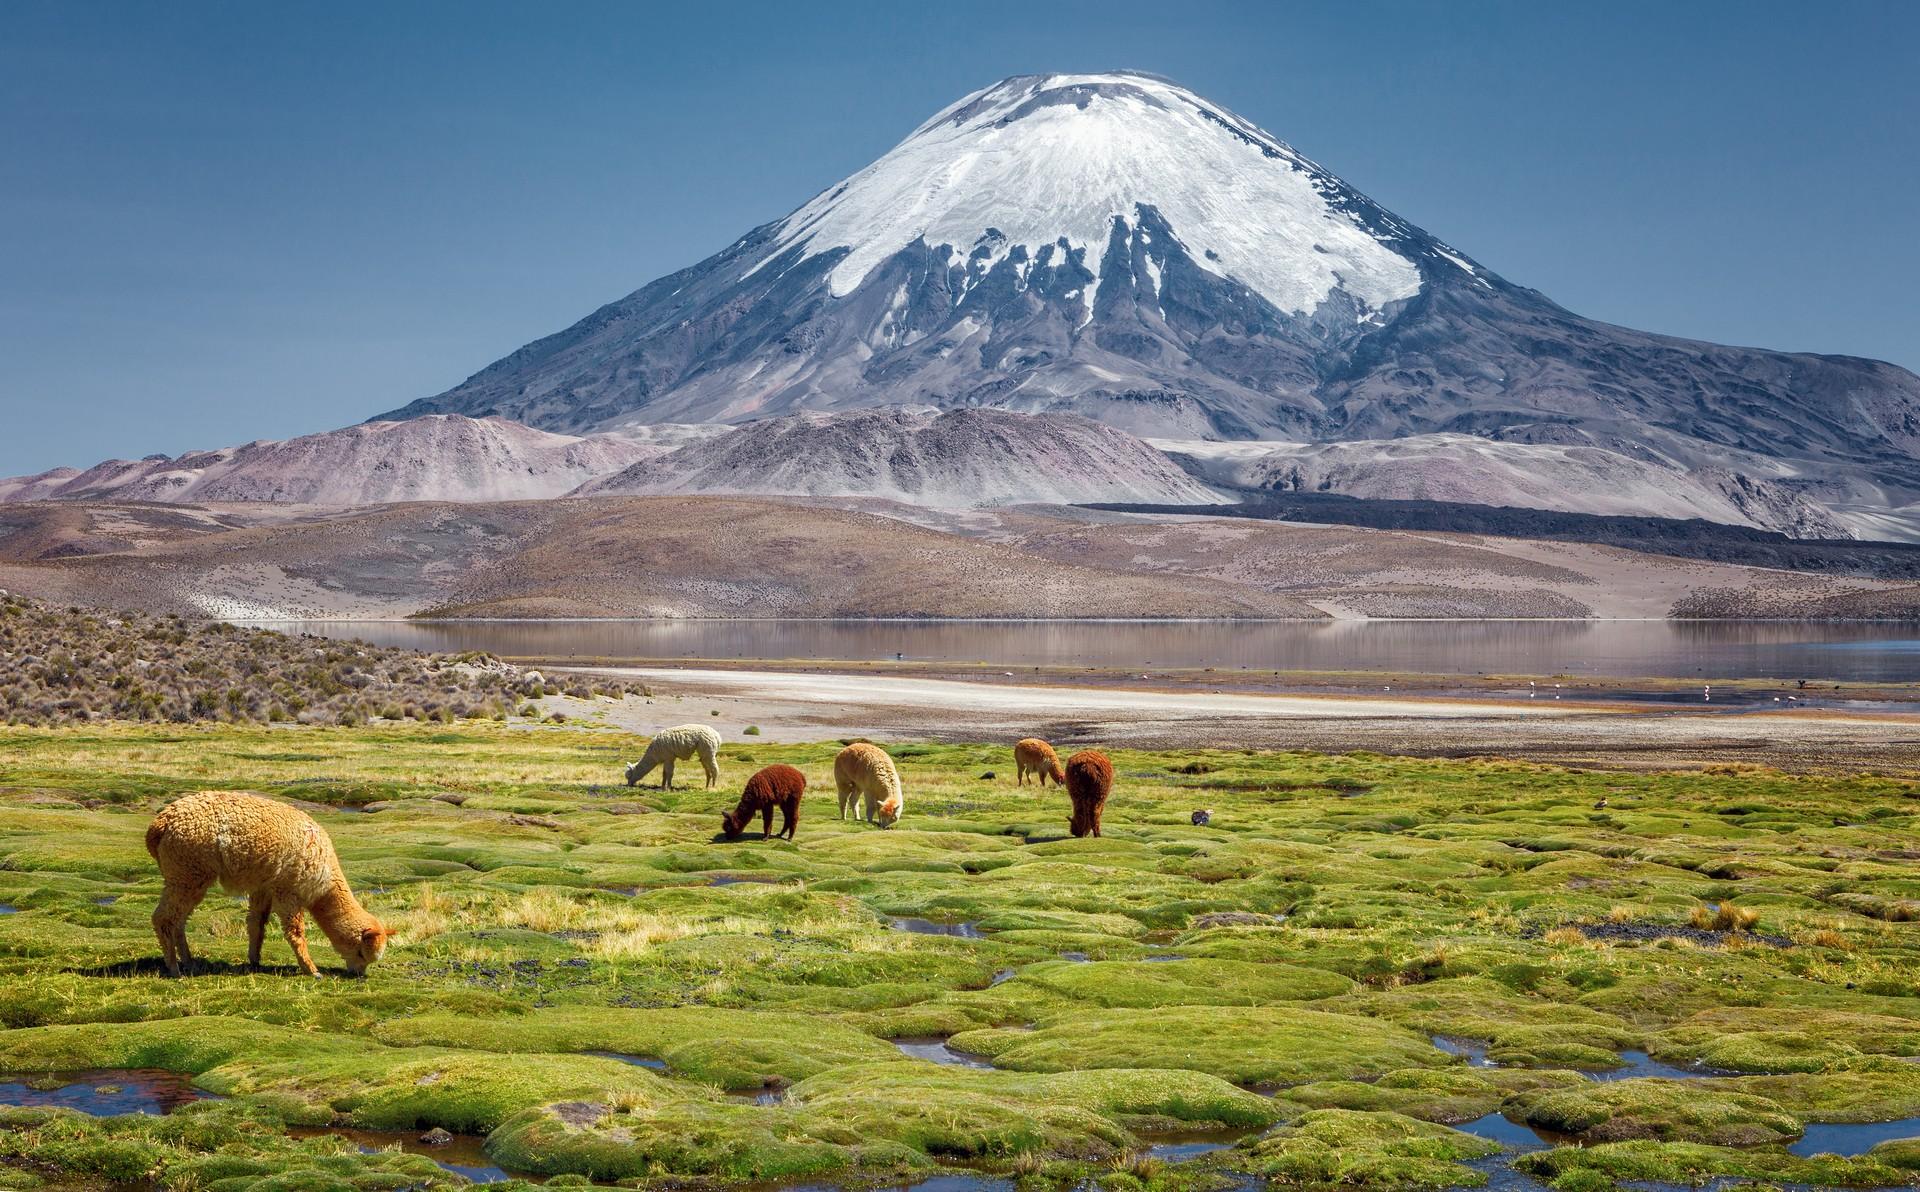 Chile Sajama NP with volcano and alpacas.